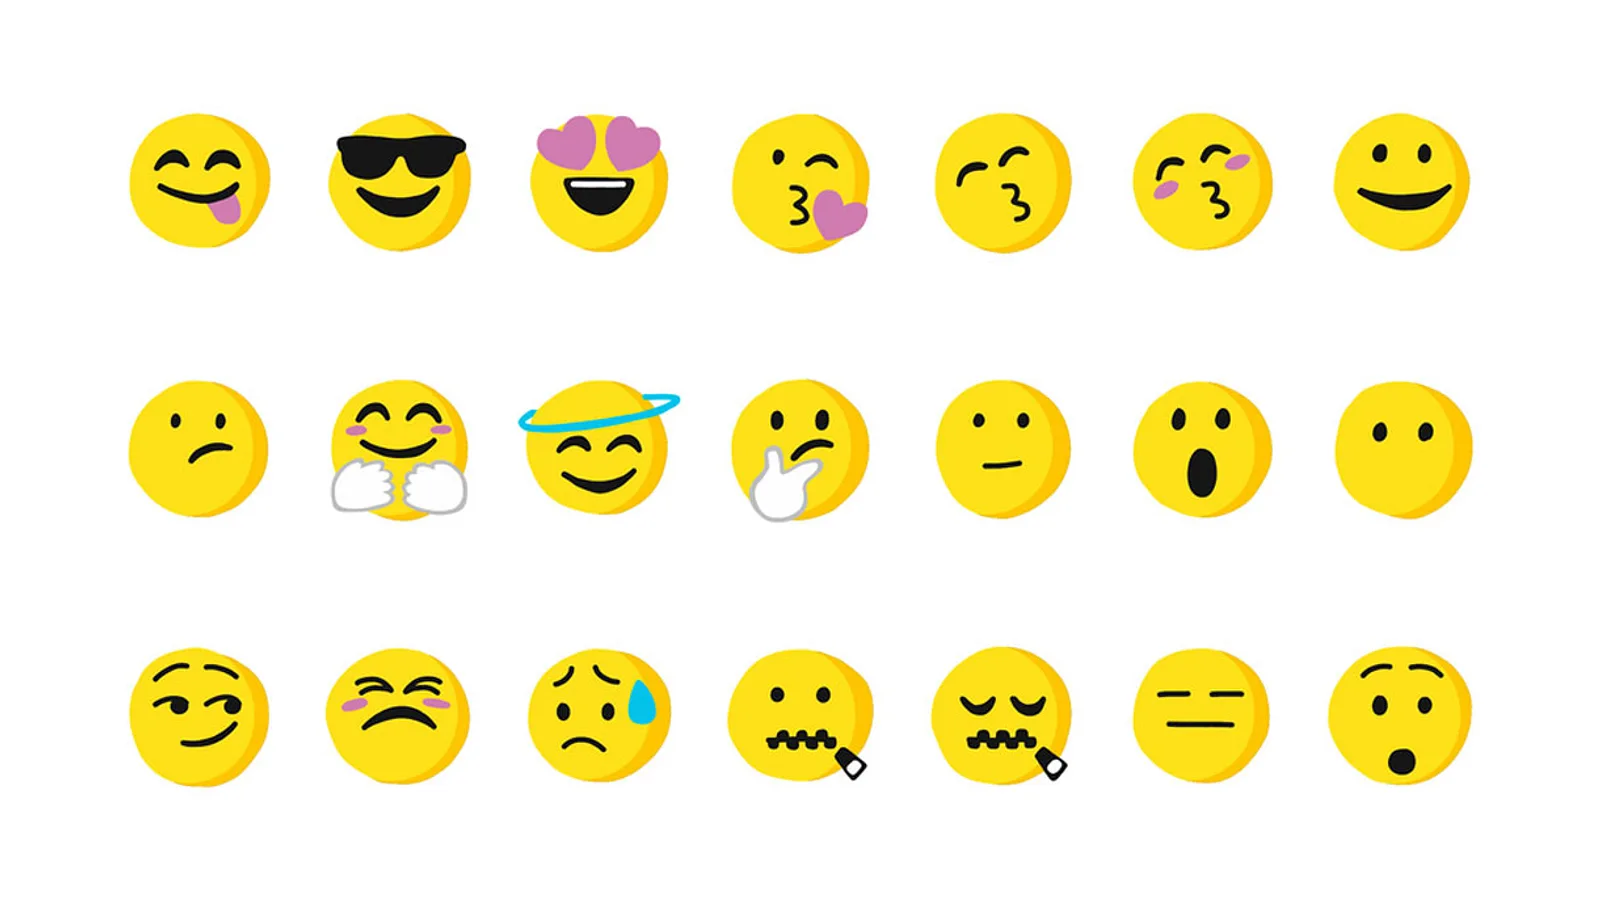 Emoji bedeutung smiley mit roten wangen